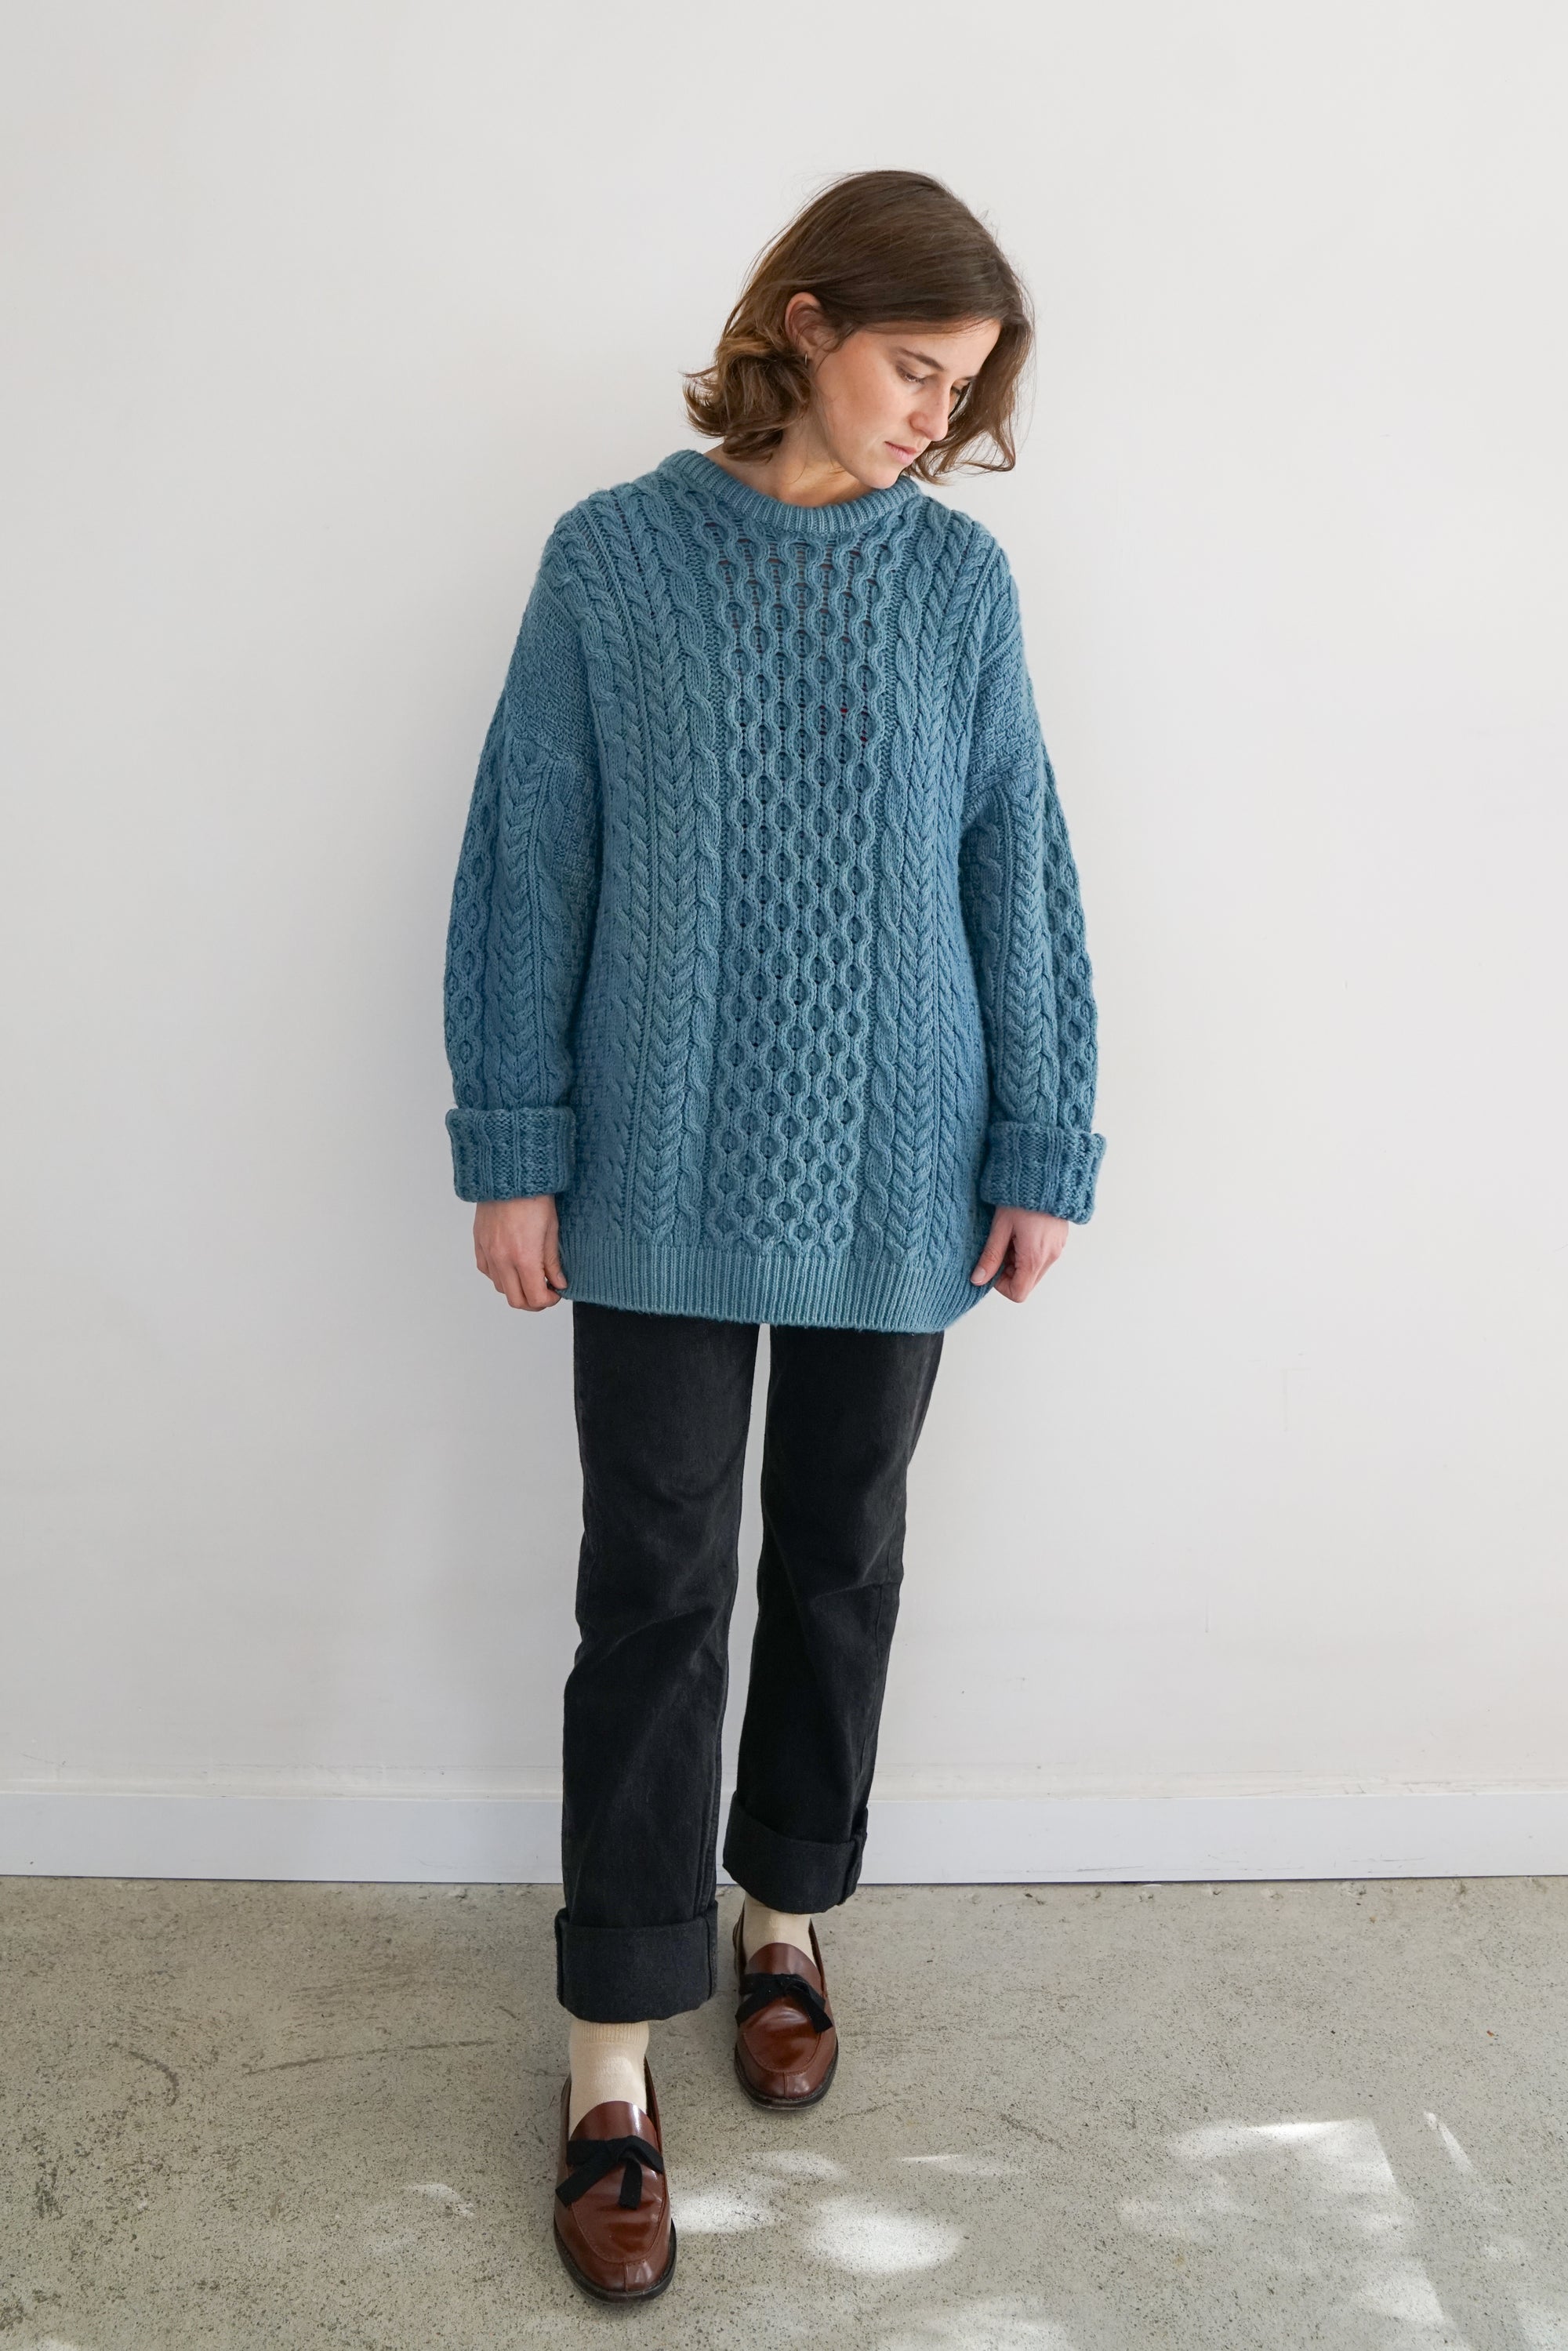 Indigo Dye Vintage Fisherman Knit Sweater